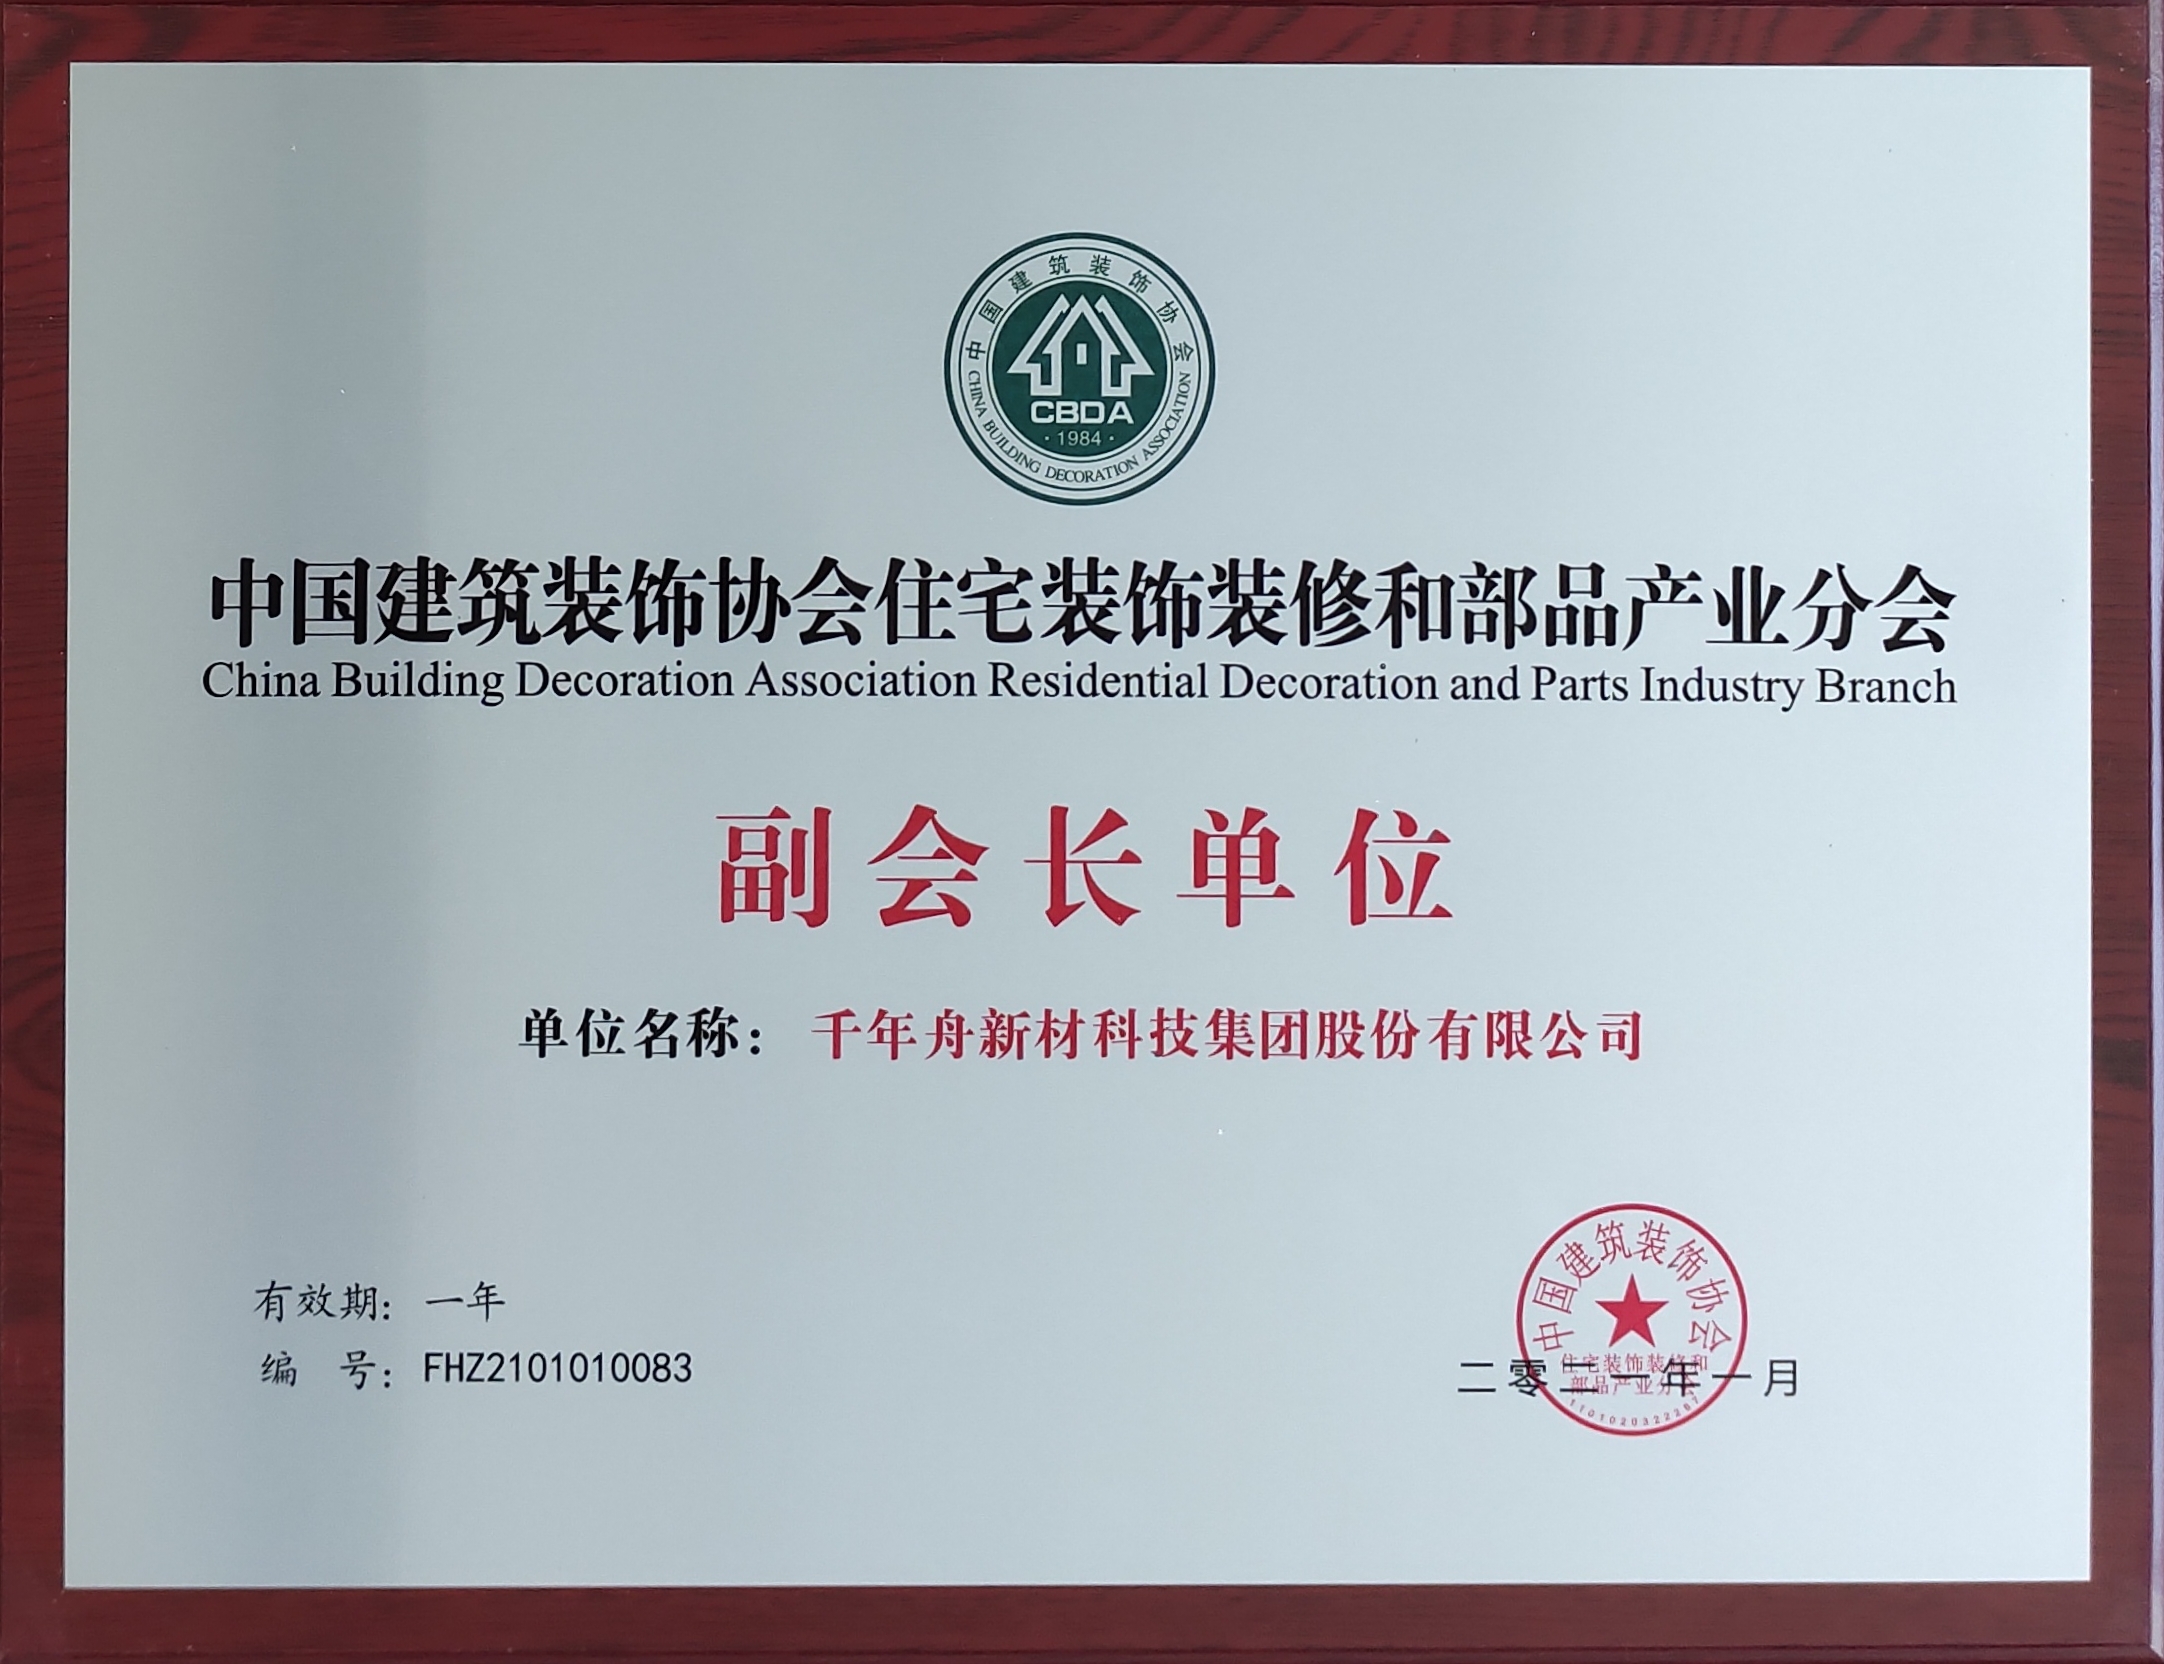 中国建筑装饰协会住宅装饰装修和部品产业分会副会长单位